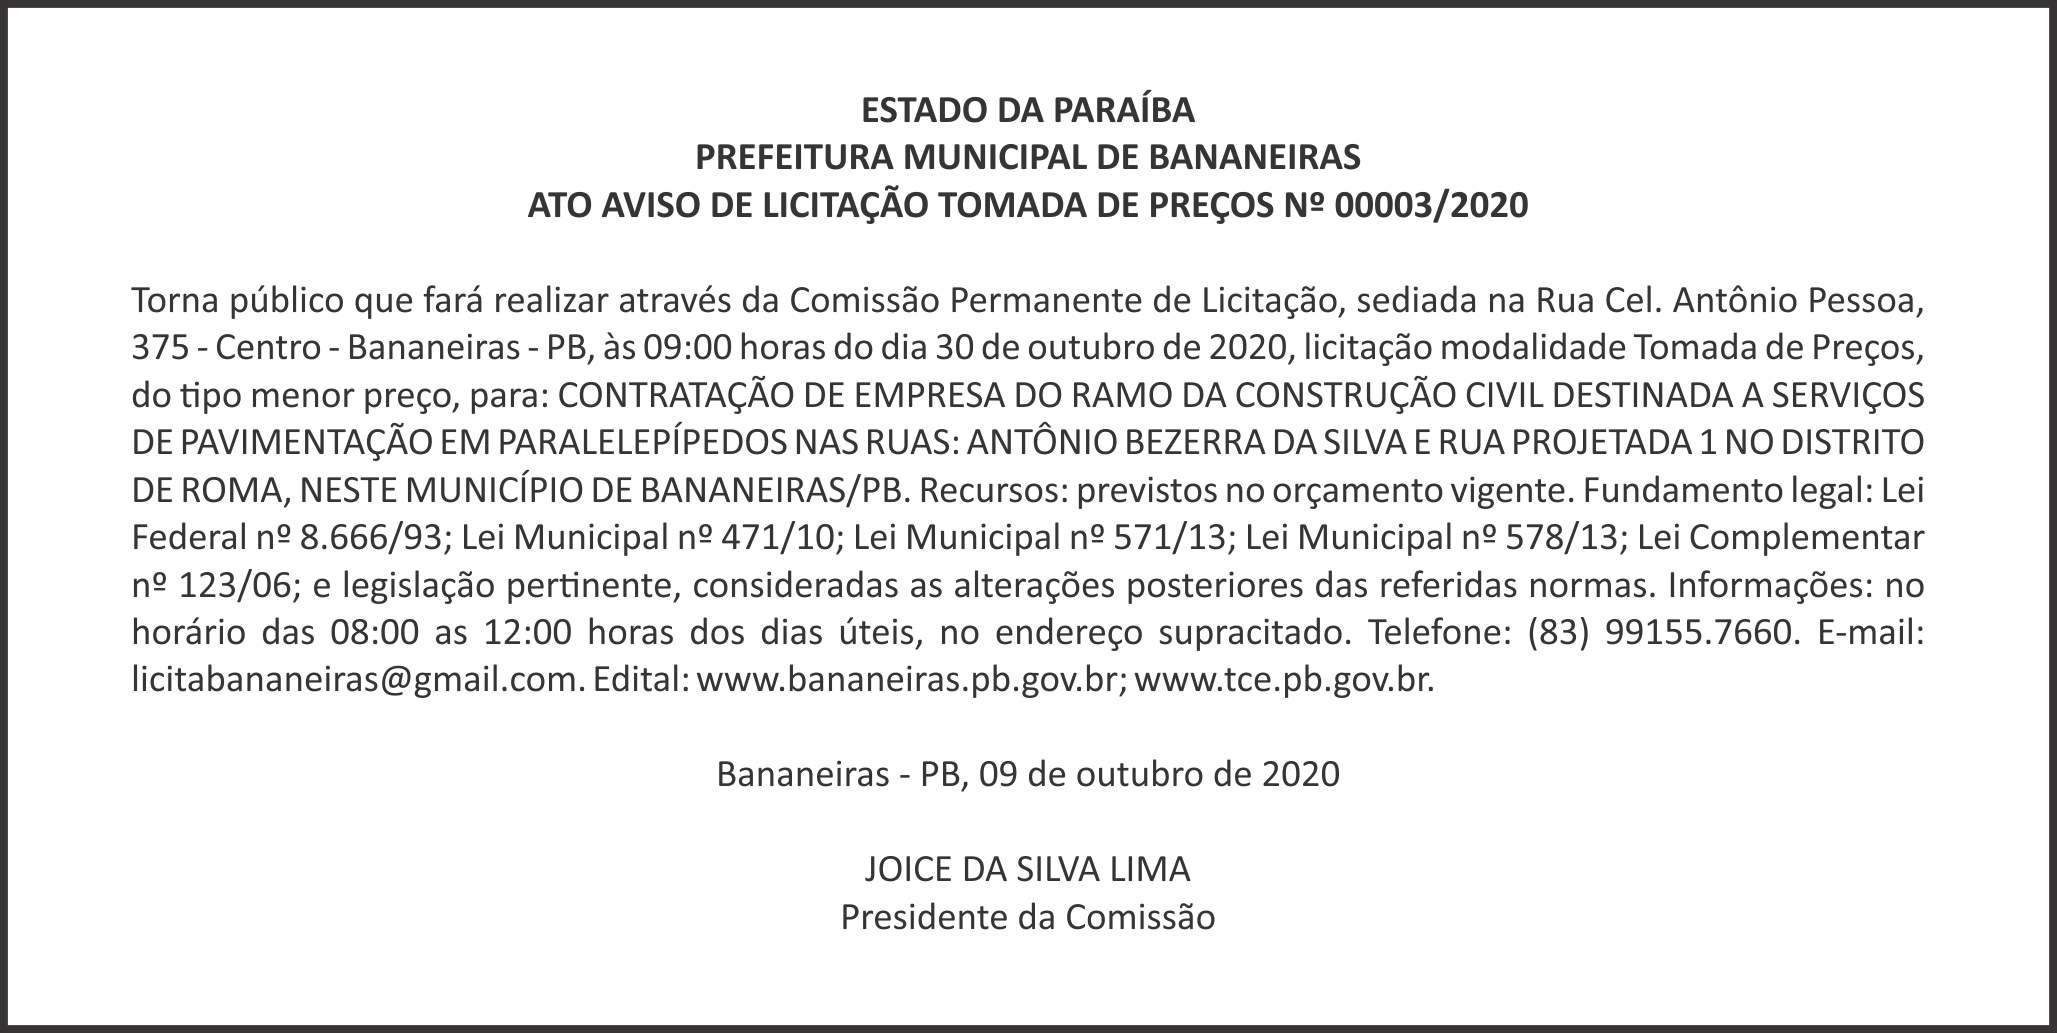 PREFEITURA MUNICIPAL DE BANANEIRAS – ATO AVISO DE LICITAÇÃO – TOMADA DE PREÇOS Nº 00003/2020